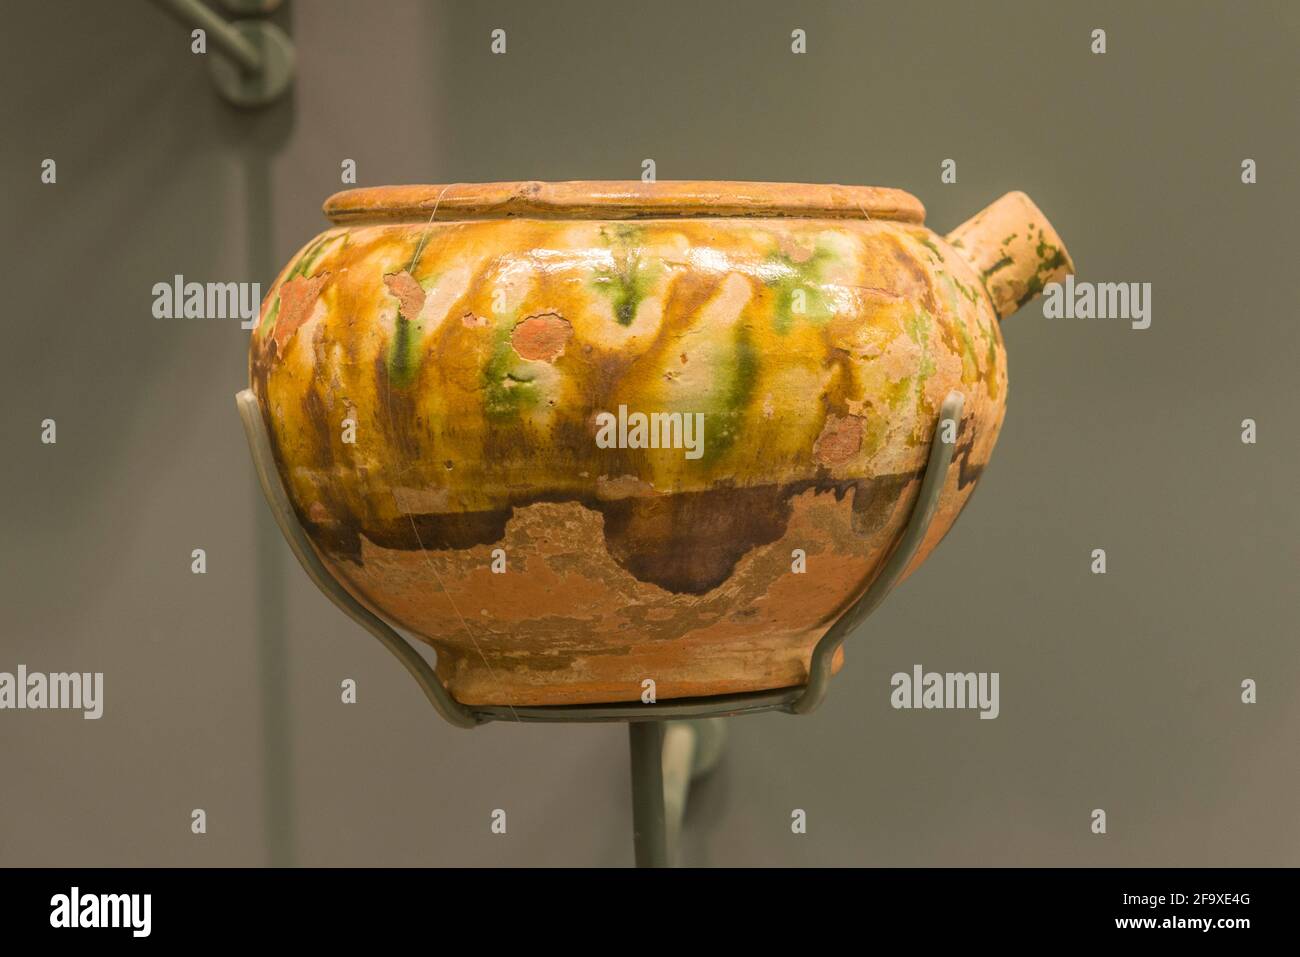 Pot en poterie émaillée tricolore de la dynastie Tang, découvert dans le district de Miyun, Pékin, Chine. Musée de la capitale de Beijing. Banque D'Images